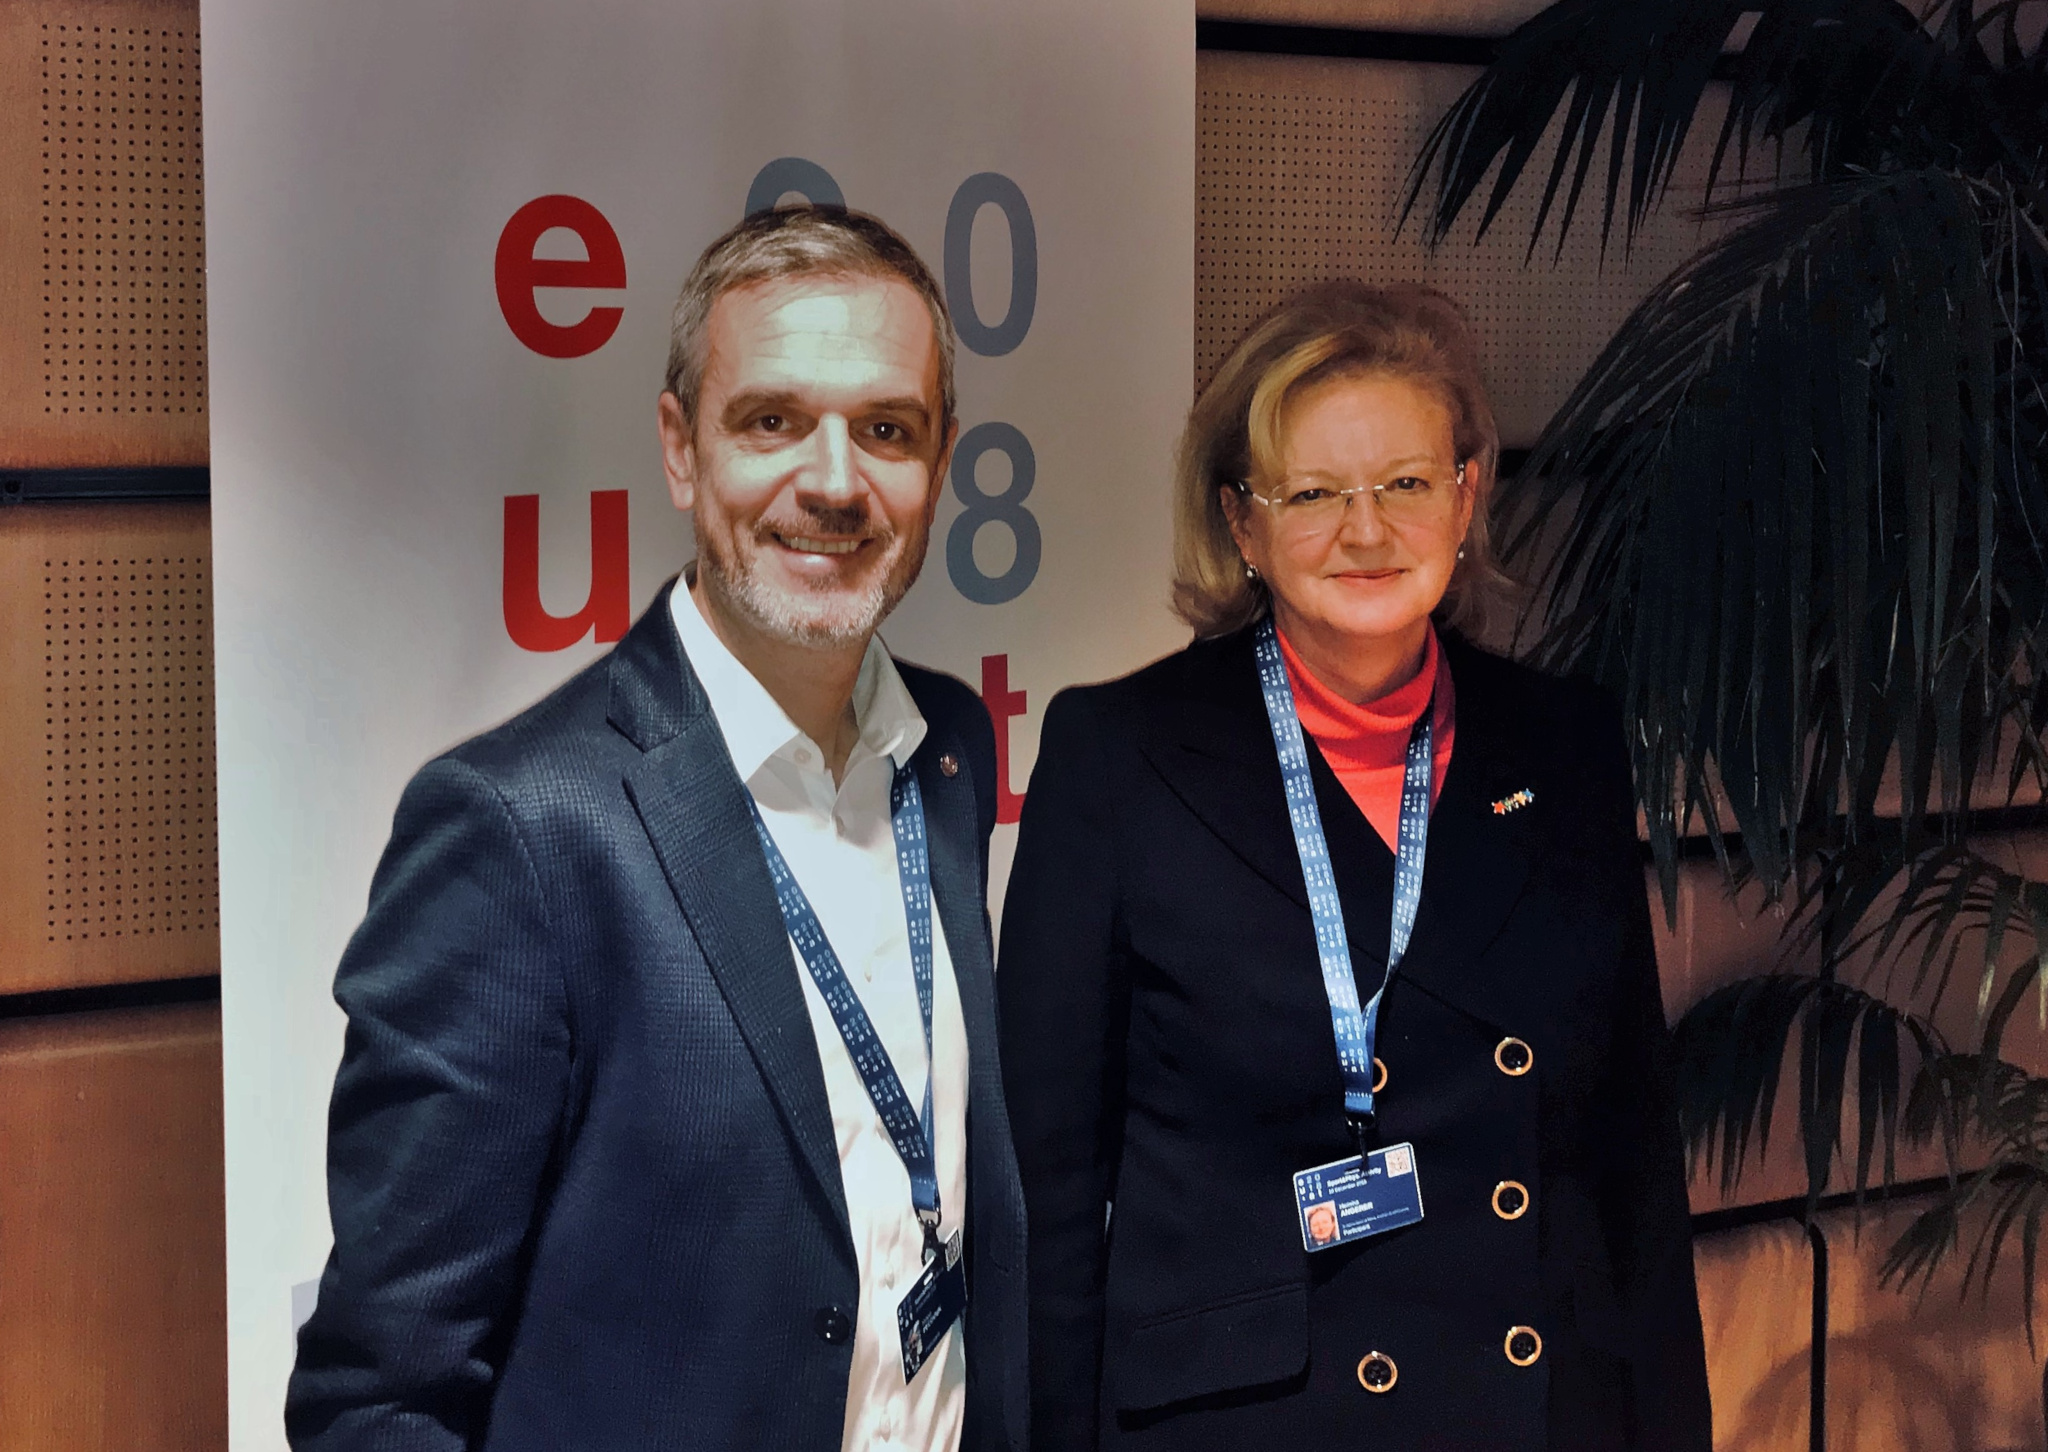 EUSA Secretary General Mr Pecovnik and Unisport Austria President Ms Angerer